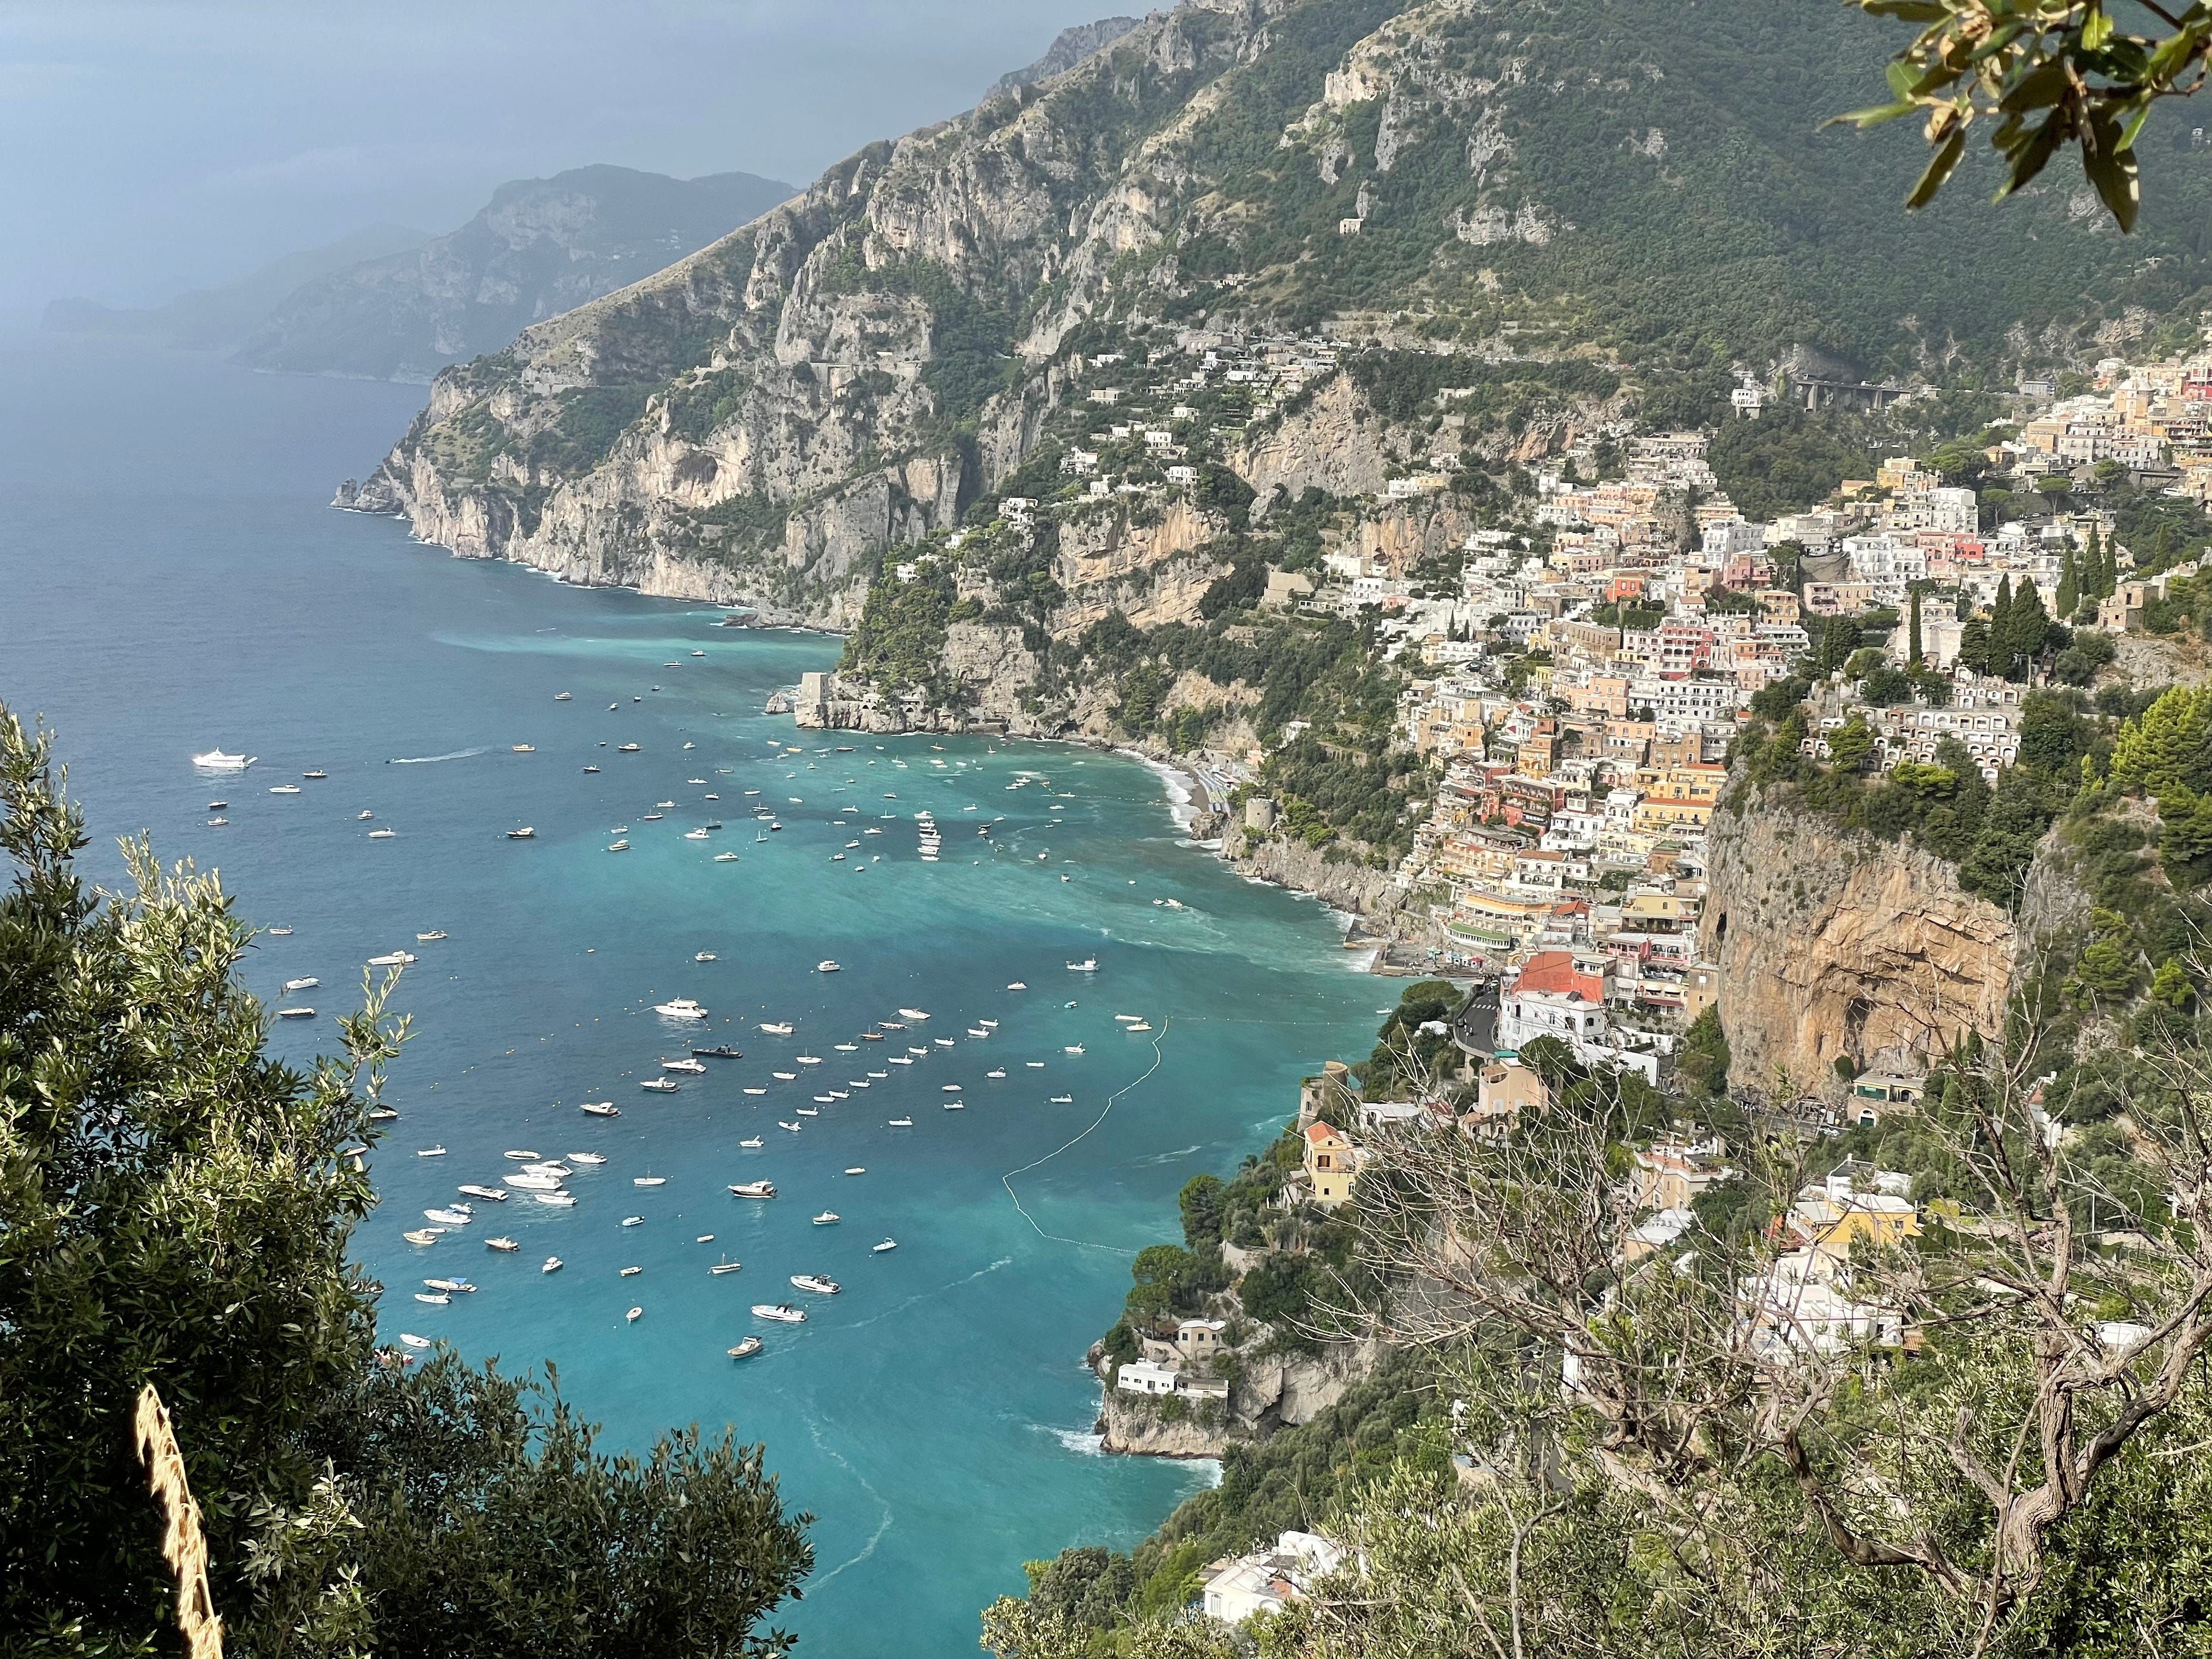 Der Blick von oben auf die Küstenstadt Positano.